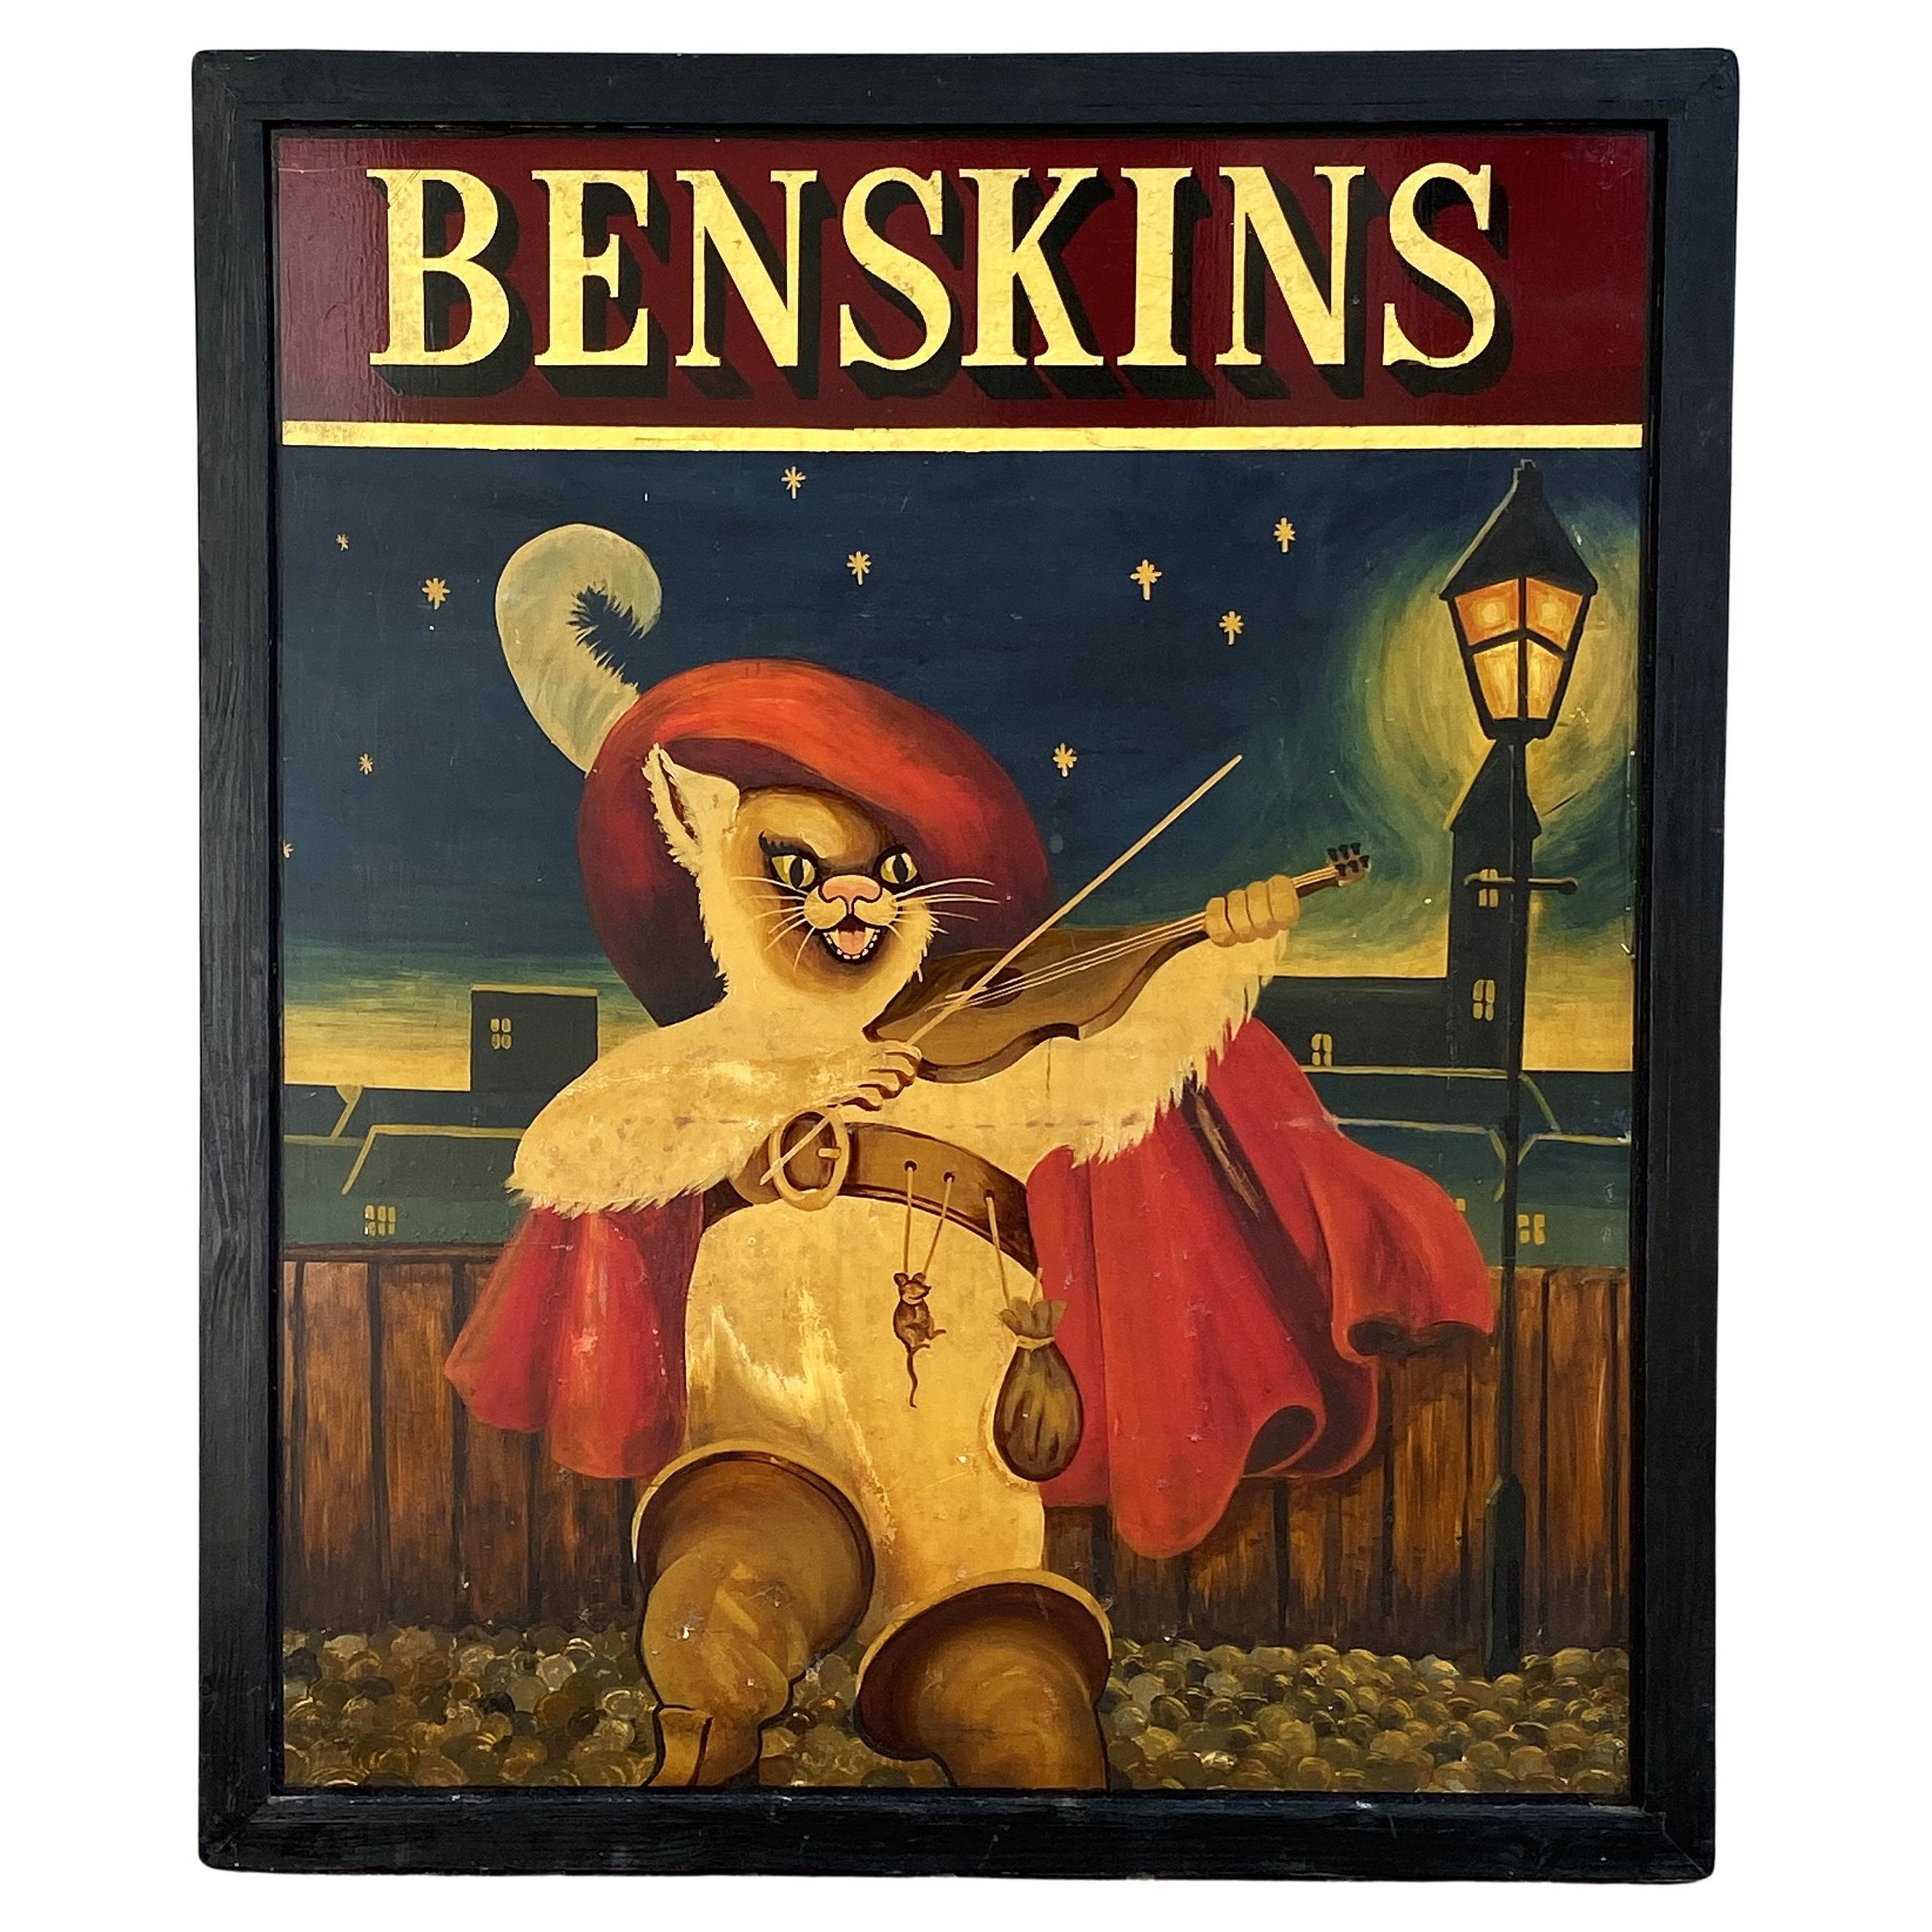 Signe de pub anglaise, Benskins (Puss in Boots) en vente